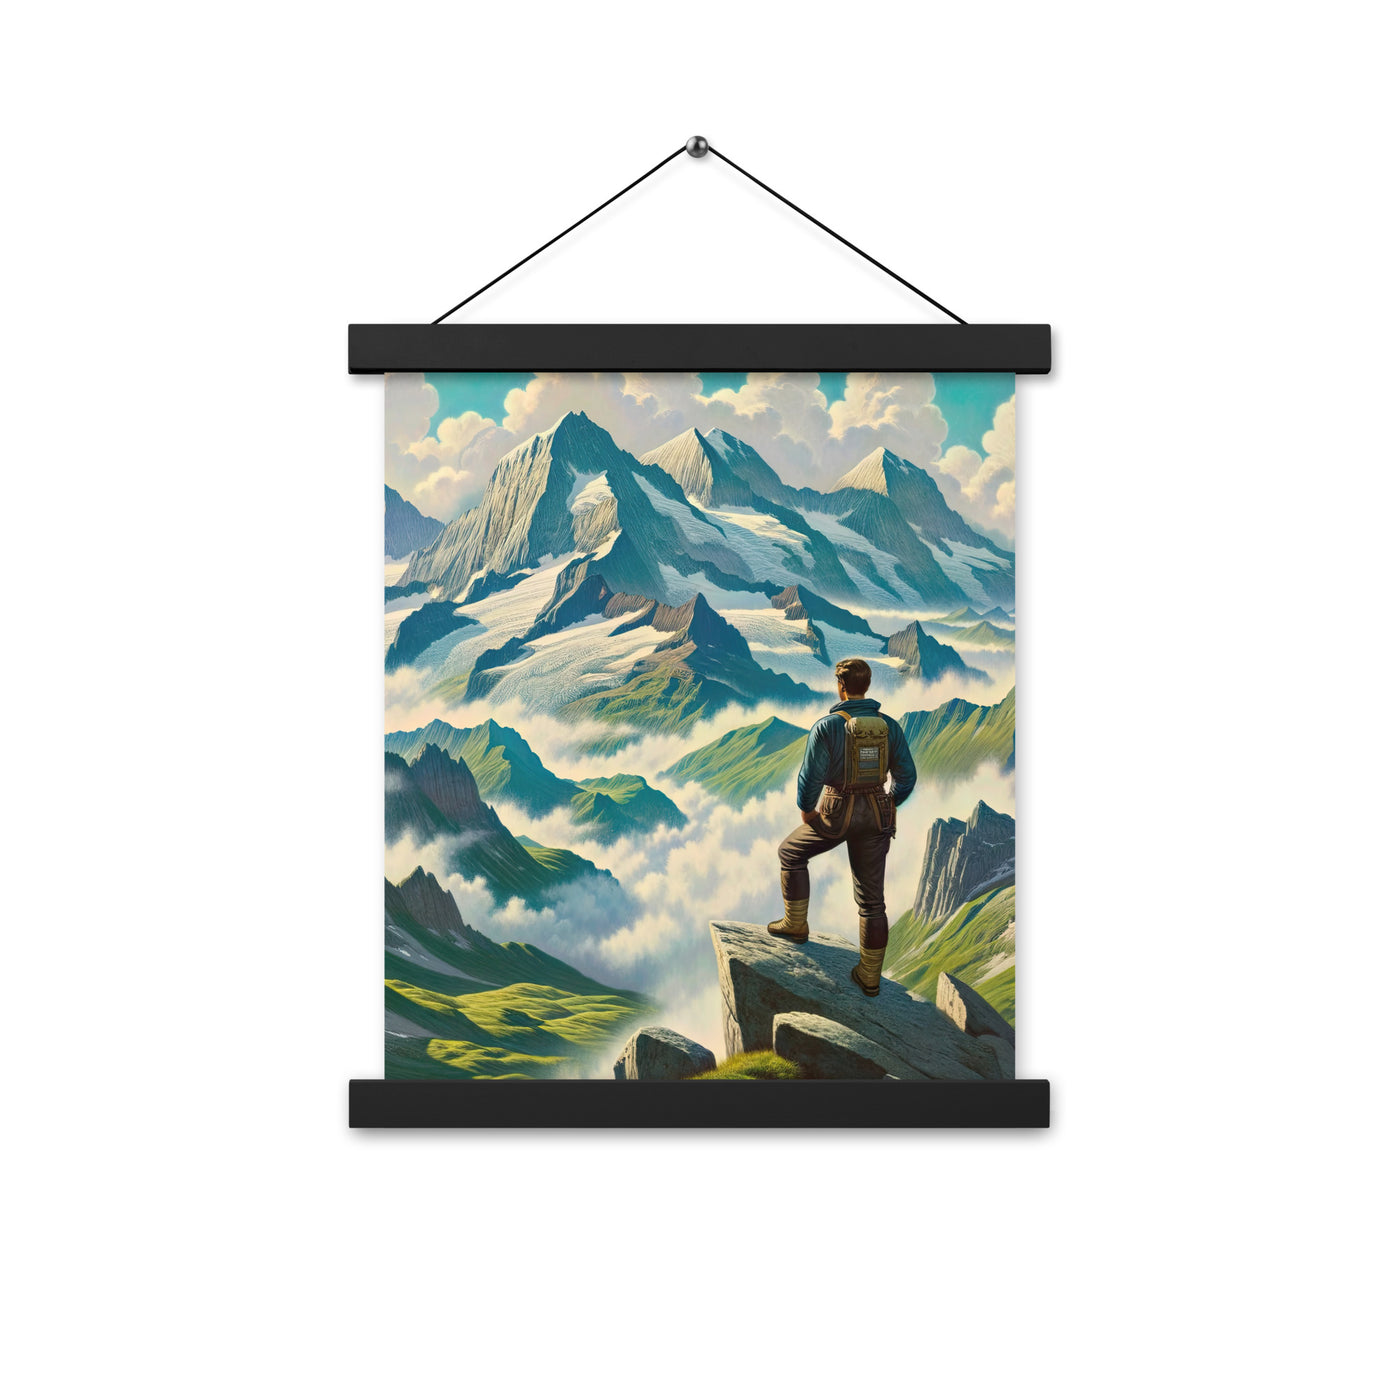 Panoramablick der Alpen mit Wanderer auf einem Hügel und schroffen Gipfeln - Premium Poster mit Aufhängung wandern xxx yyy zzz 27.9 x 35.6 cm